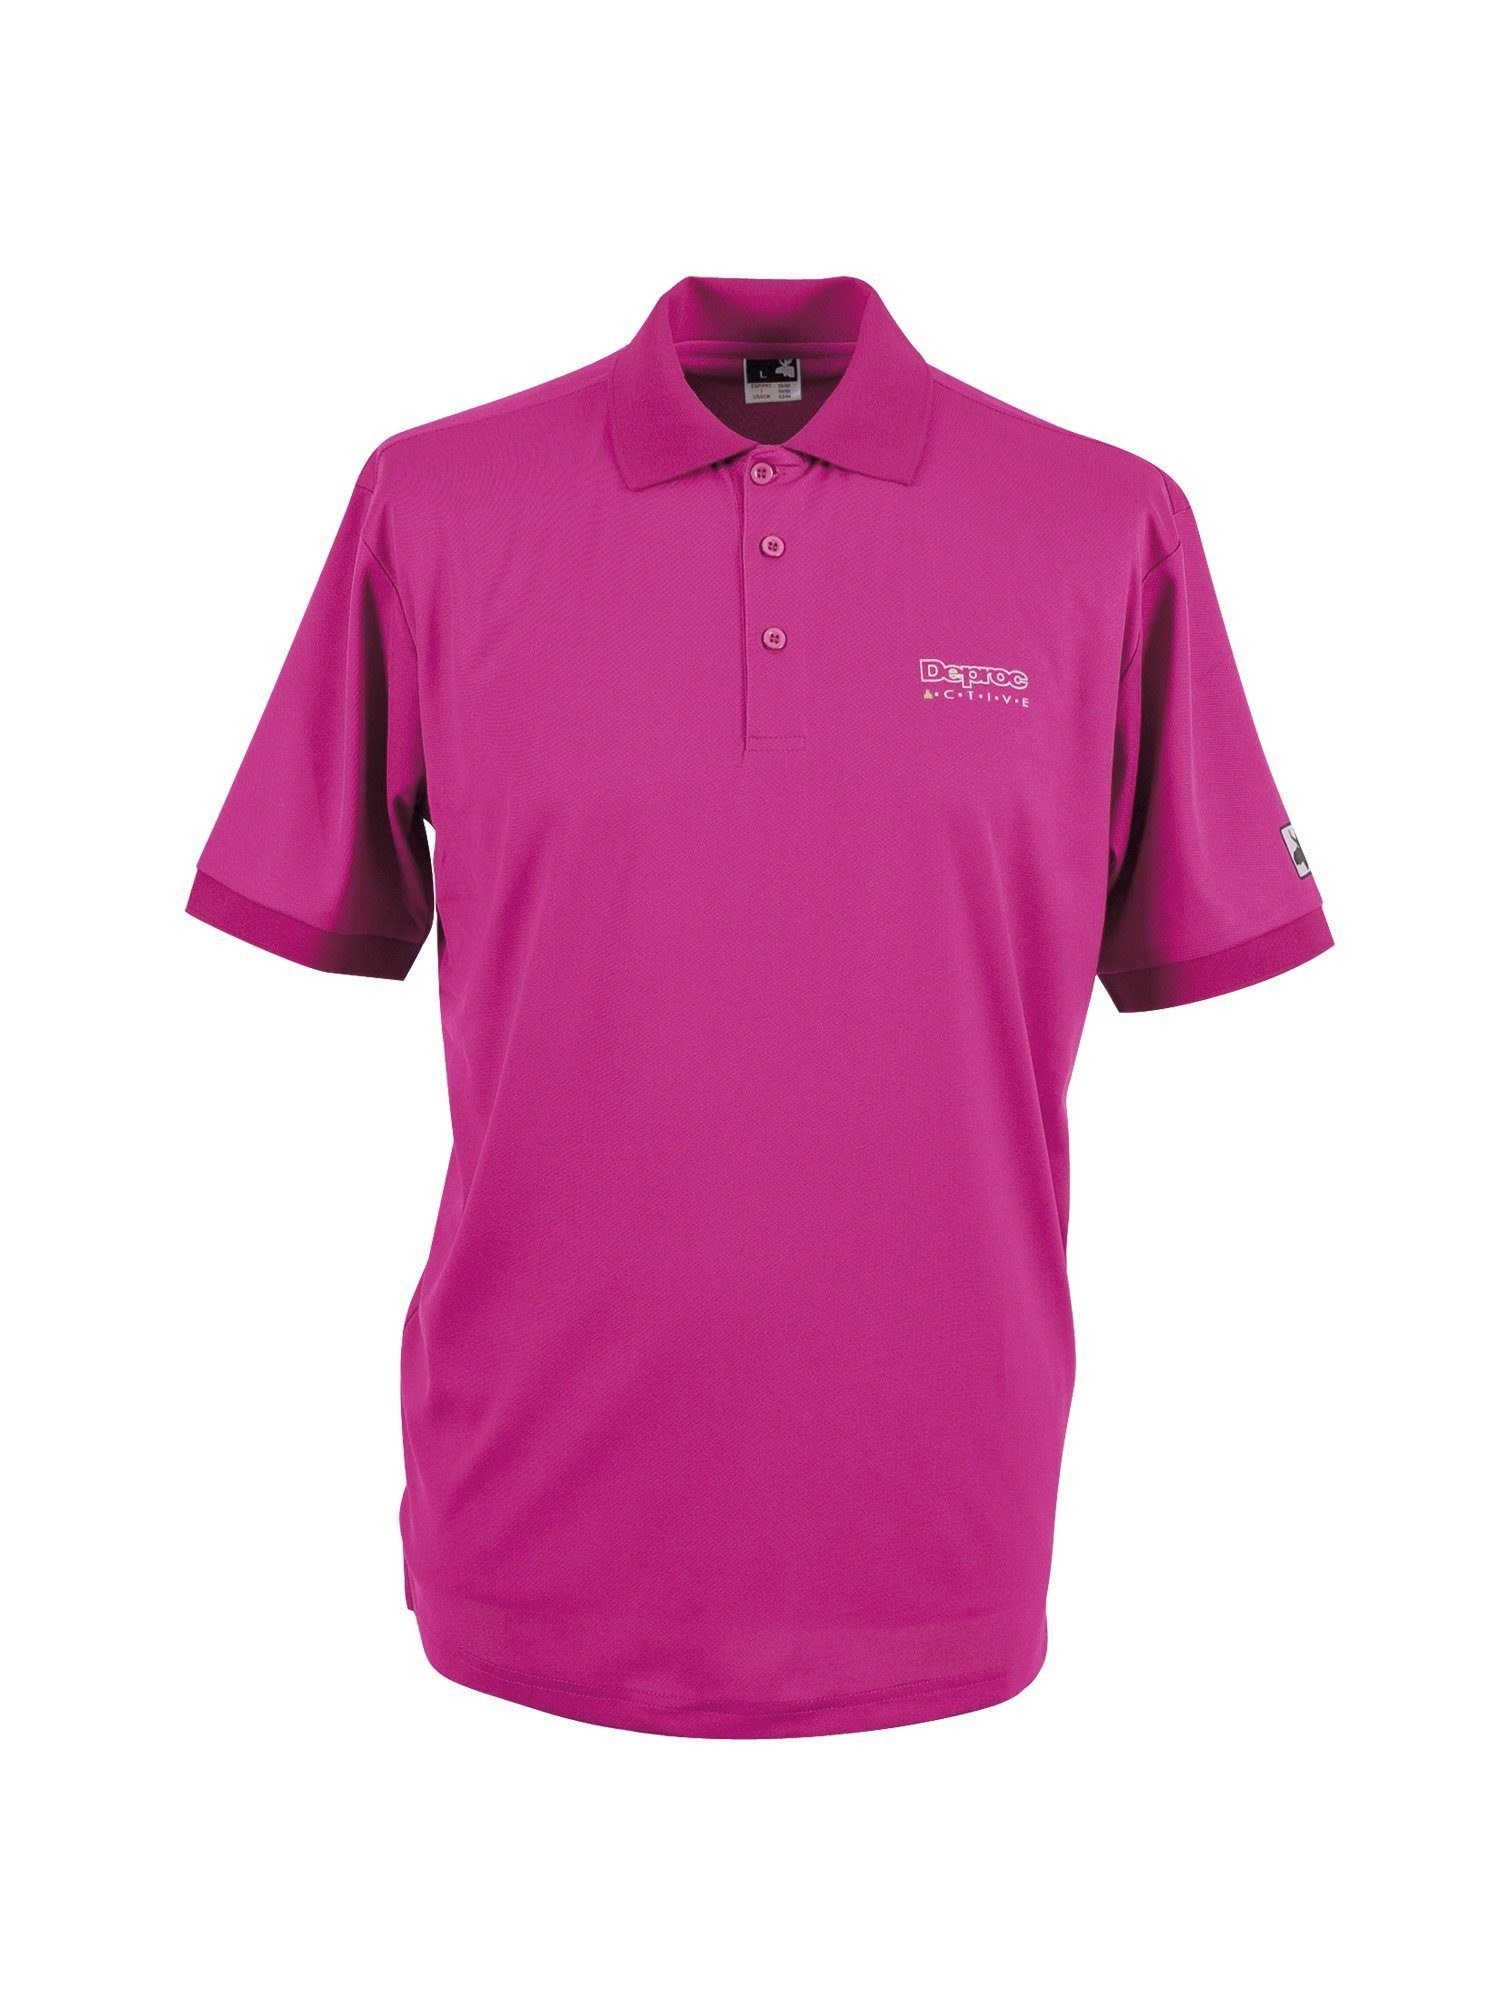 DEPROC erhältlich in auch WOMEN HEDLEY Active pink Poloshirt Größen Großen